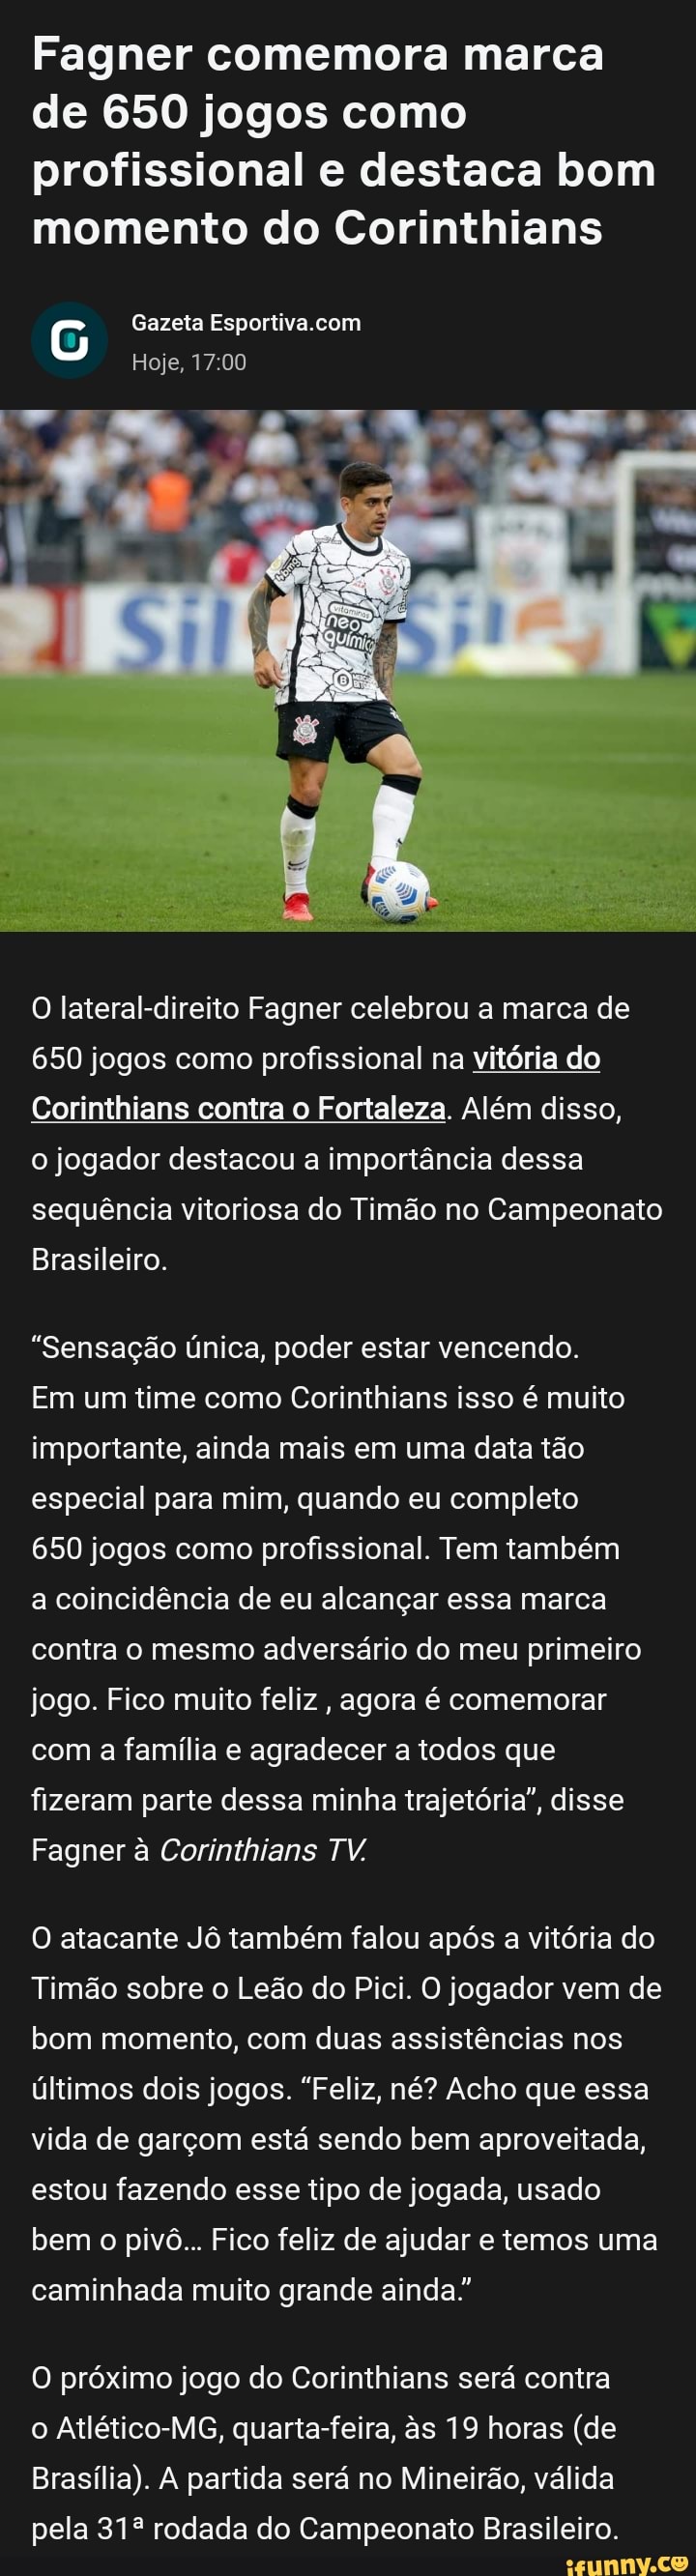 Próximos jogos do Corinthians no Campeonato Brasileiro. Quantos